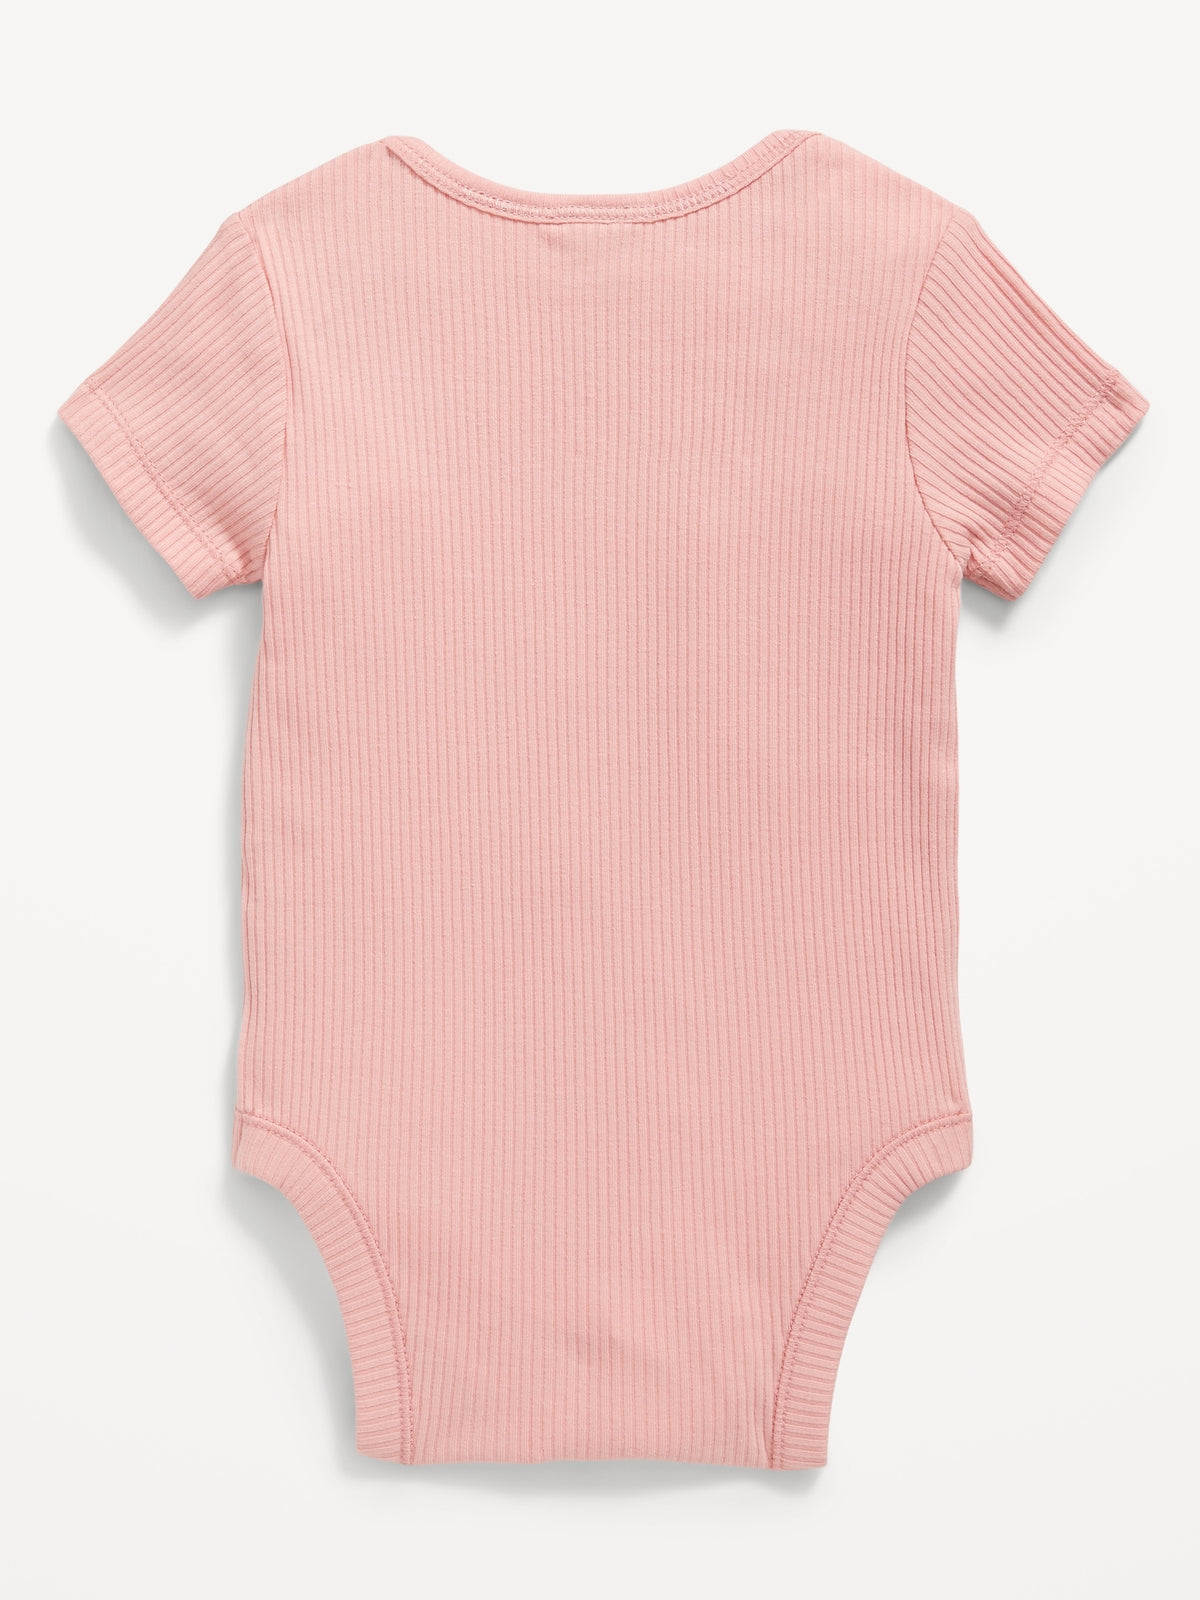 Unisex Short-Sleeve Rib-Knit Bodysuit for Baby